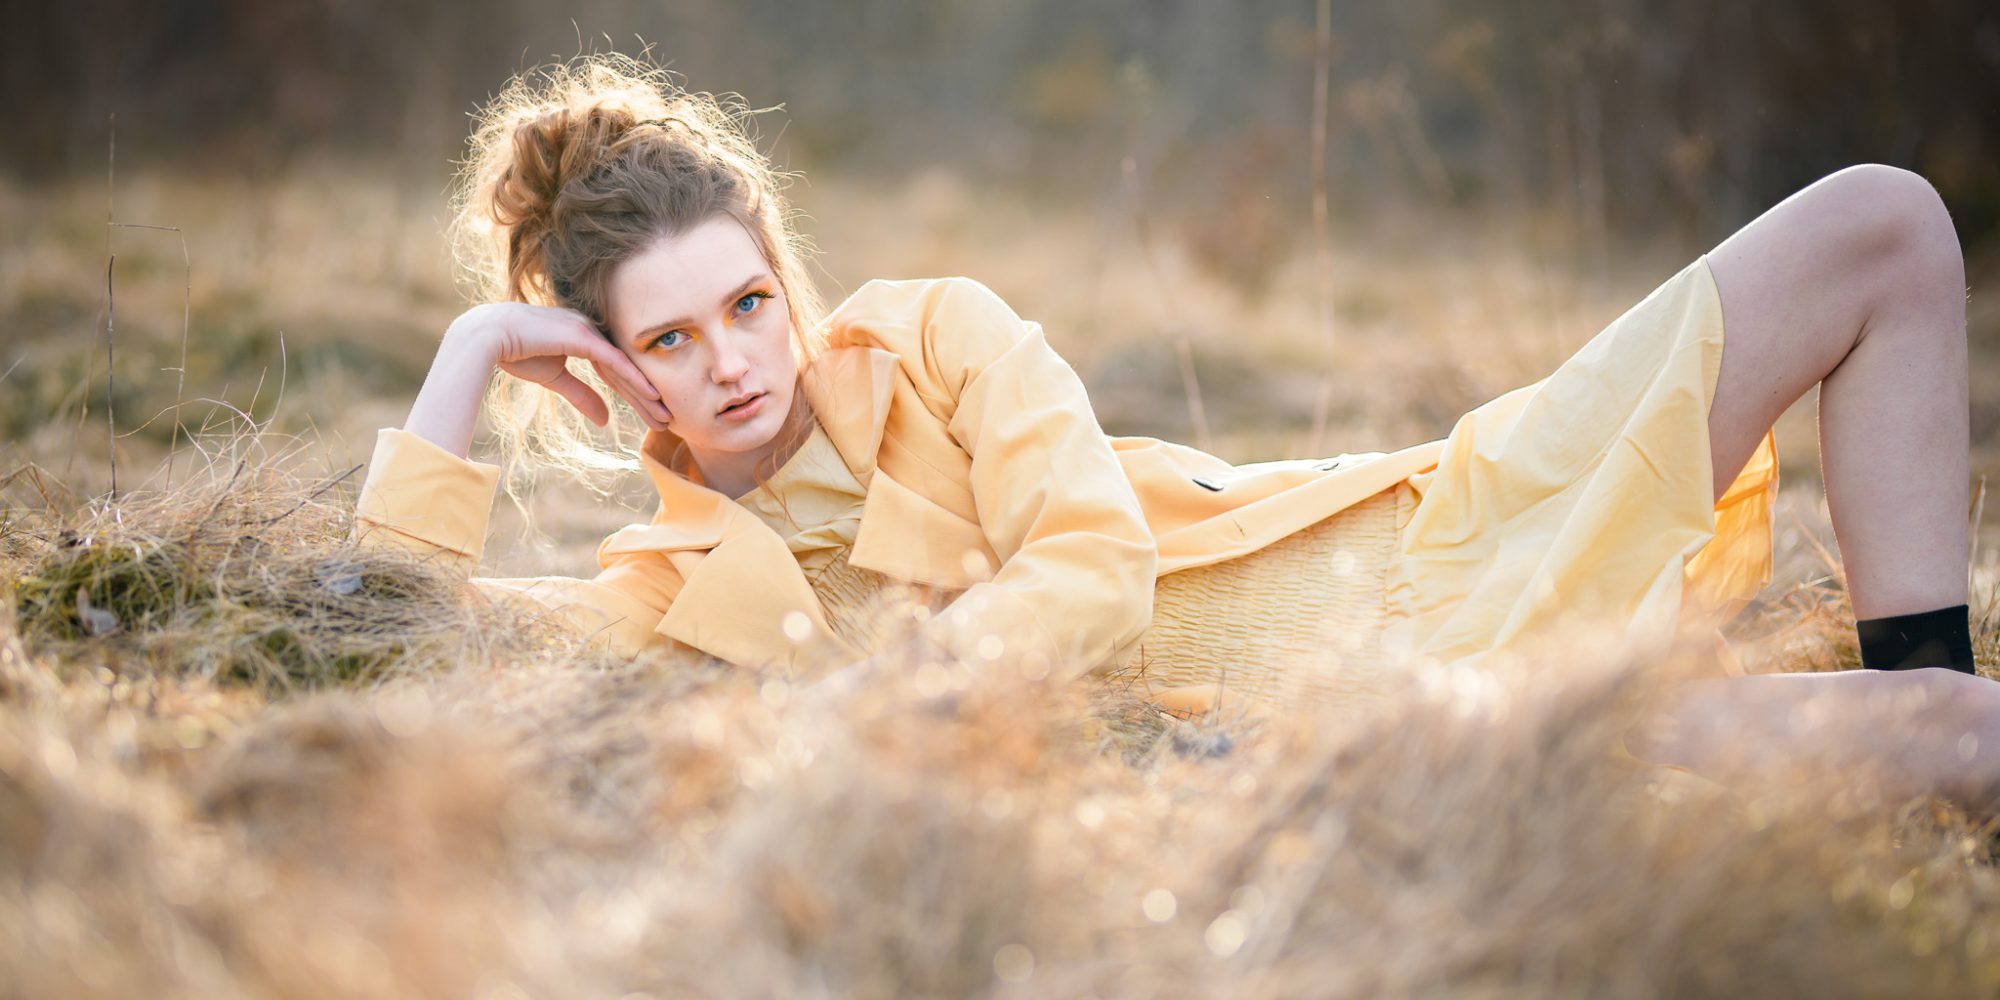 Egoboost-porträtt, Modefotografering. Modell ligger i gul rock på en äng med dött gräs i en kaxig pose.